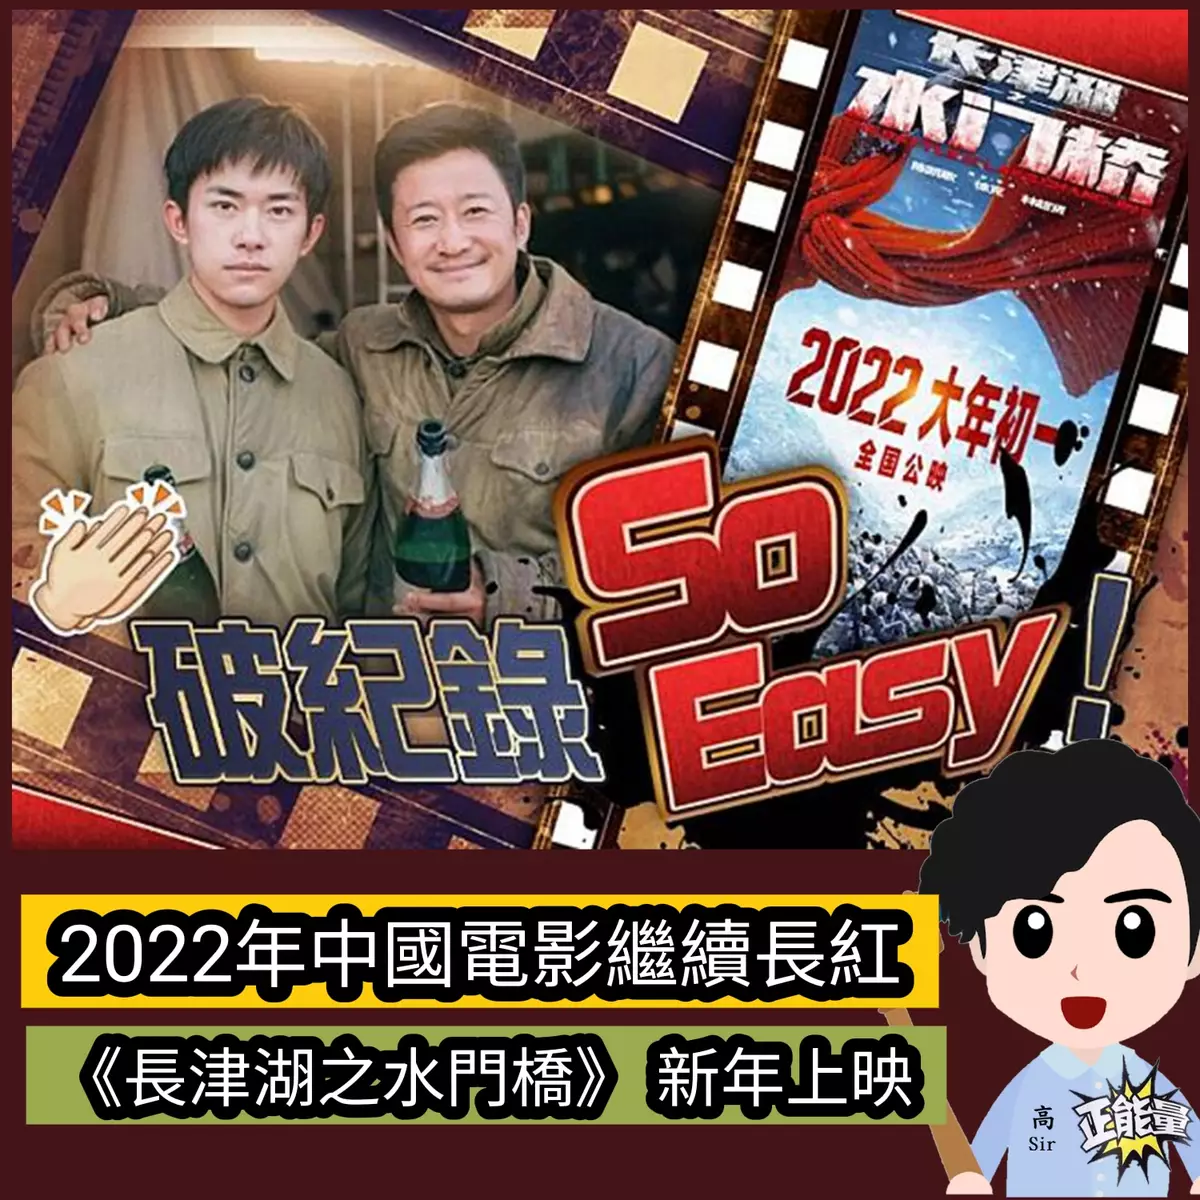 2022年中國電影繼續長紅 《長津湖之水門橋》 新年上映 